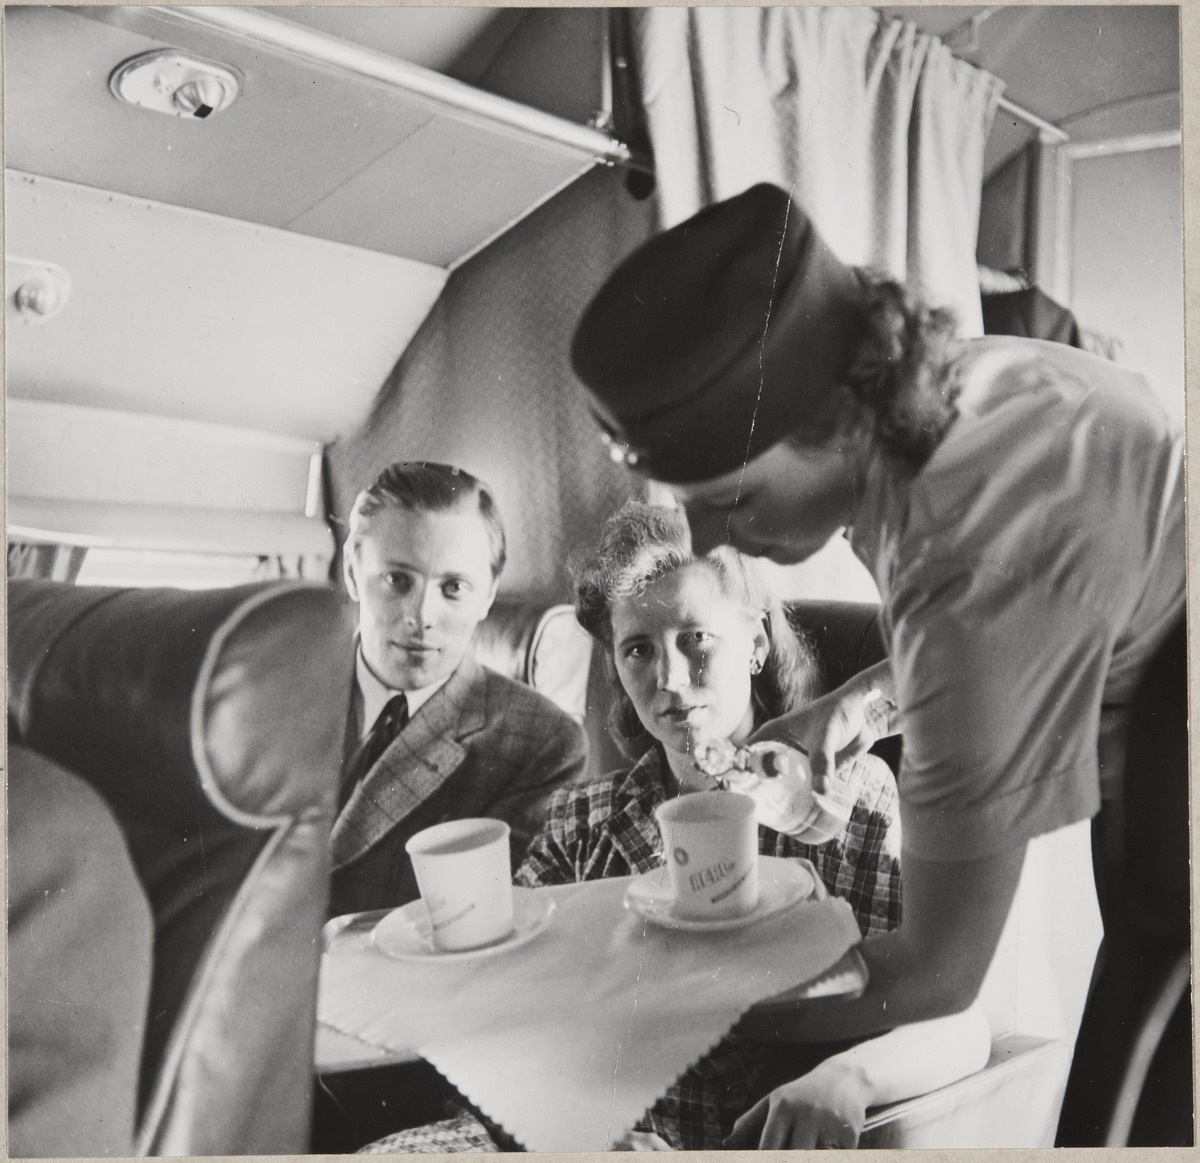 Kuva lentokoneen matkustamosta. Kaksi matkustajaa istumassa. Lentoemäntä kaataa juomaa mukiin.